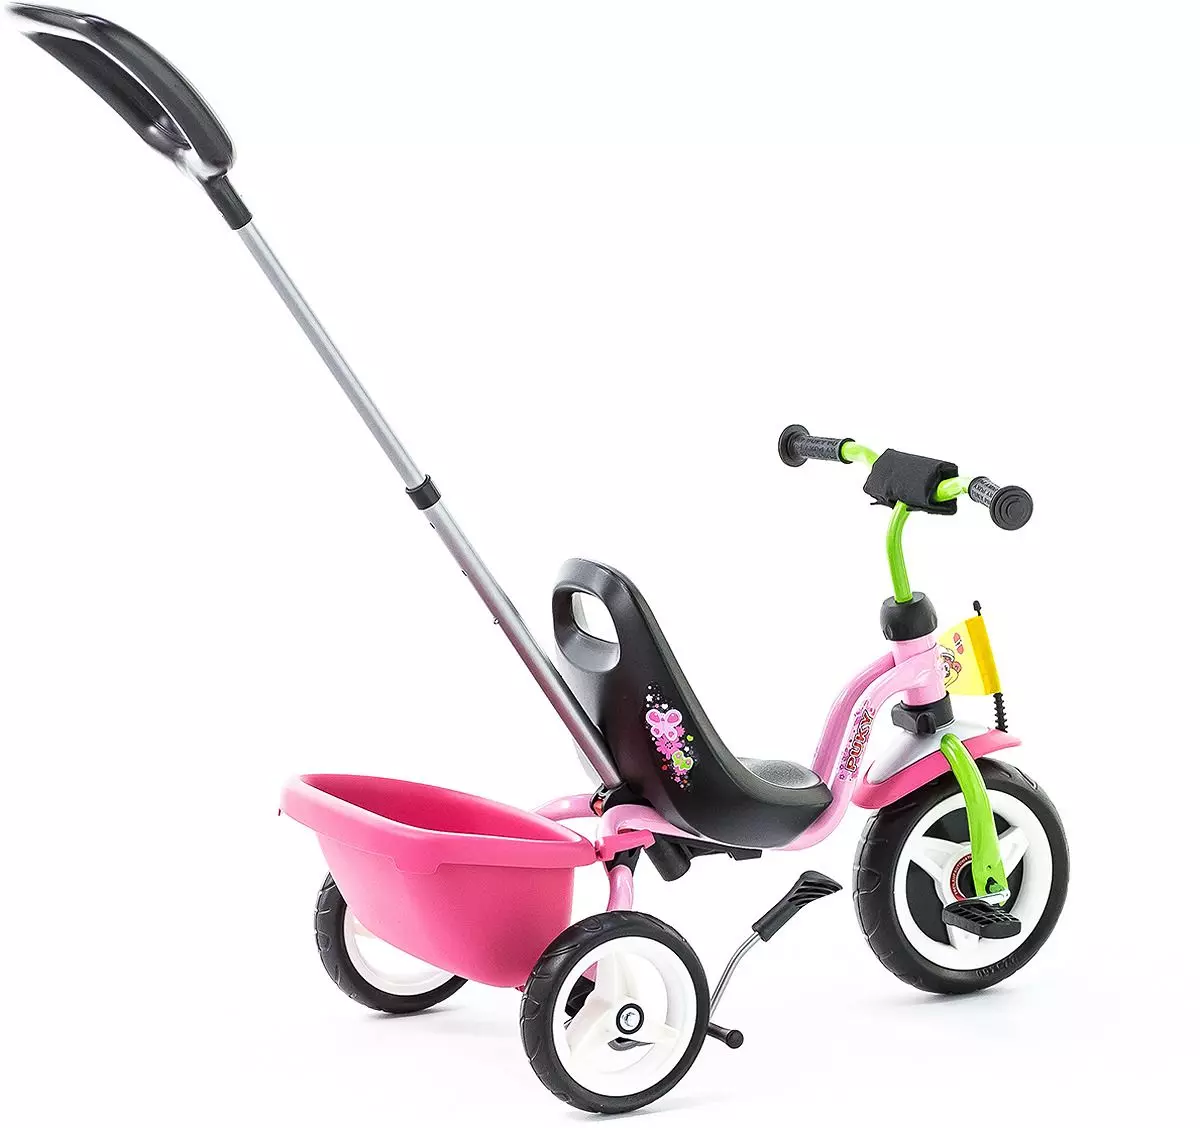 אופניים פואקי: תלת אופני ילדים וחתול, שני מודלים ארבעה גלגלים וארבע גלגלים 16-18 ו -20 אינץ '. אפשרויות אחרות 20370_15